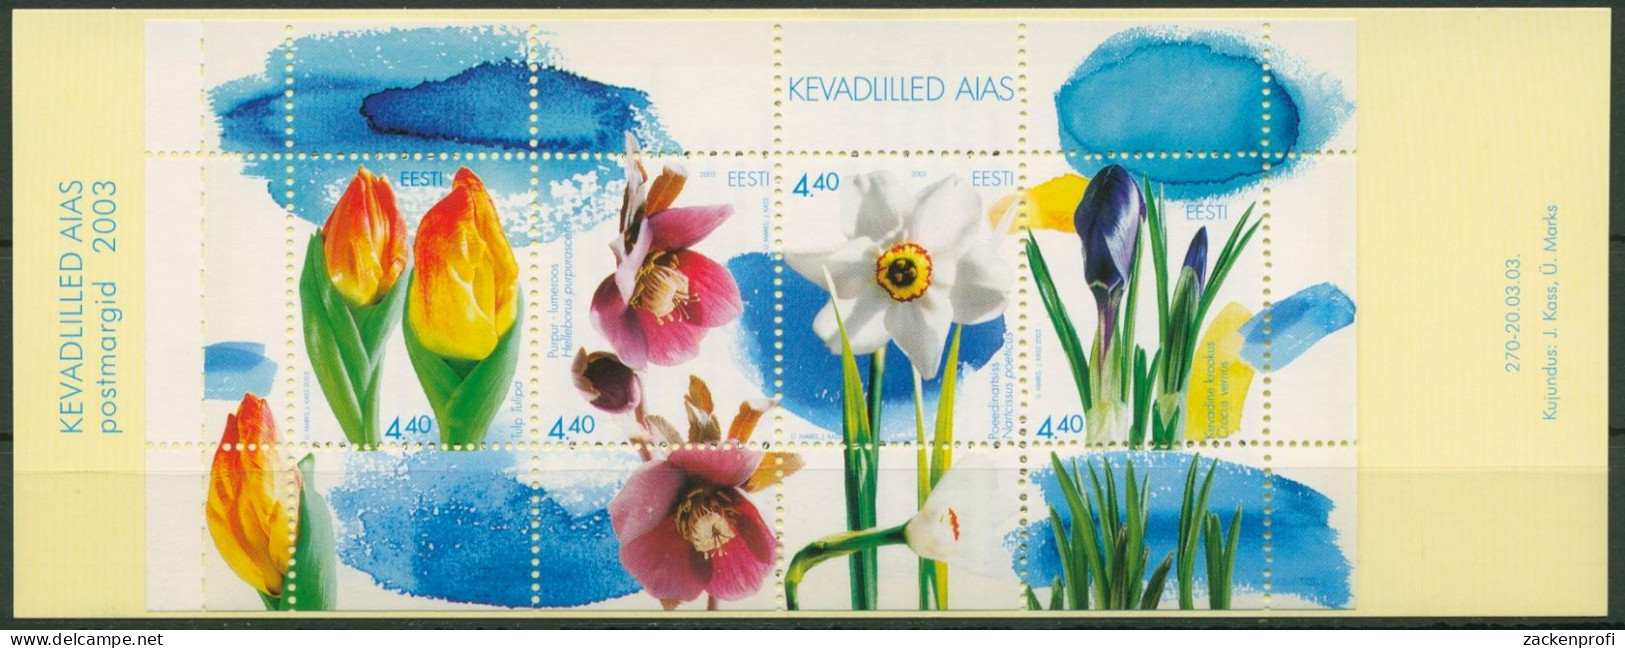 Estland 2003 Frühlingsblumen Markenheftchen MH 3 Postfrisch (C90188) - Estonia